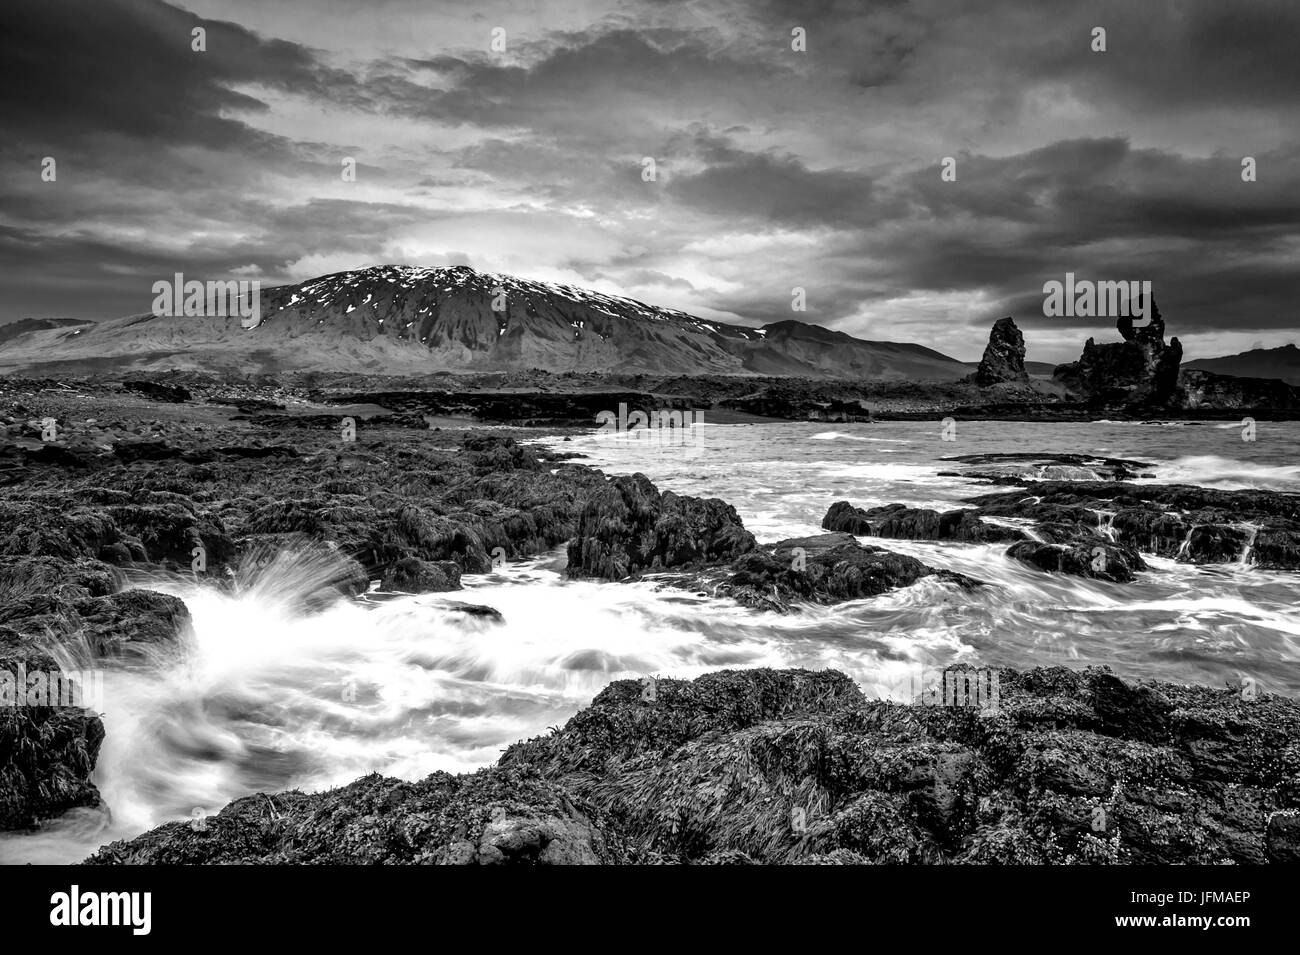 Snaefellsnes peninsula, Islanda, Europa, primordiale seascape in bianco e nero, Foto Stock